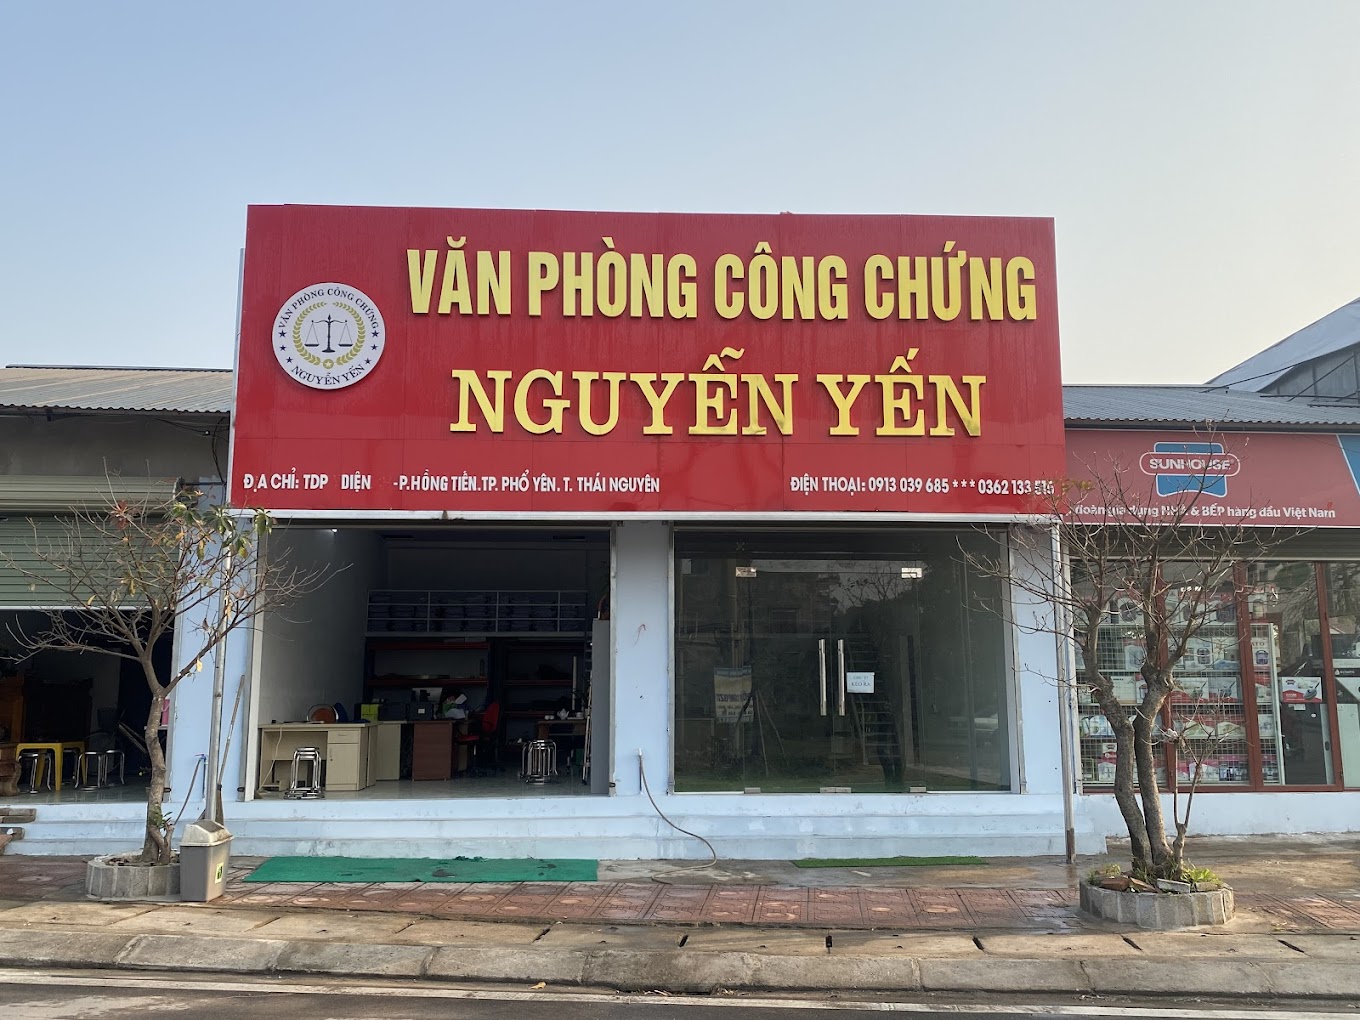 Liên hệ Văn phòng công chứng Nguyễn Yến thông tin địa chỉ số điện thoại